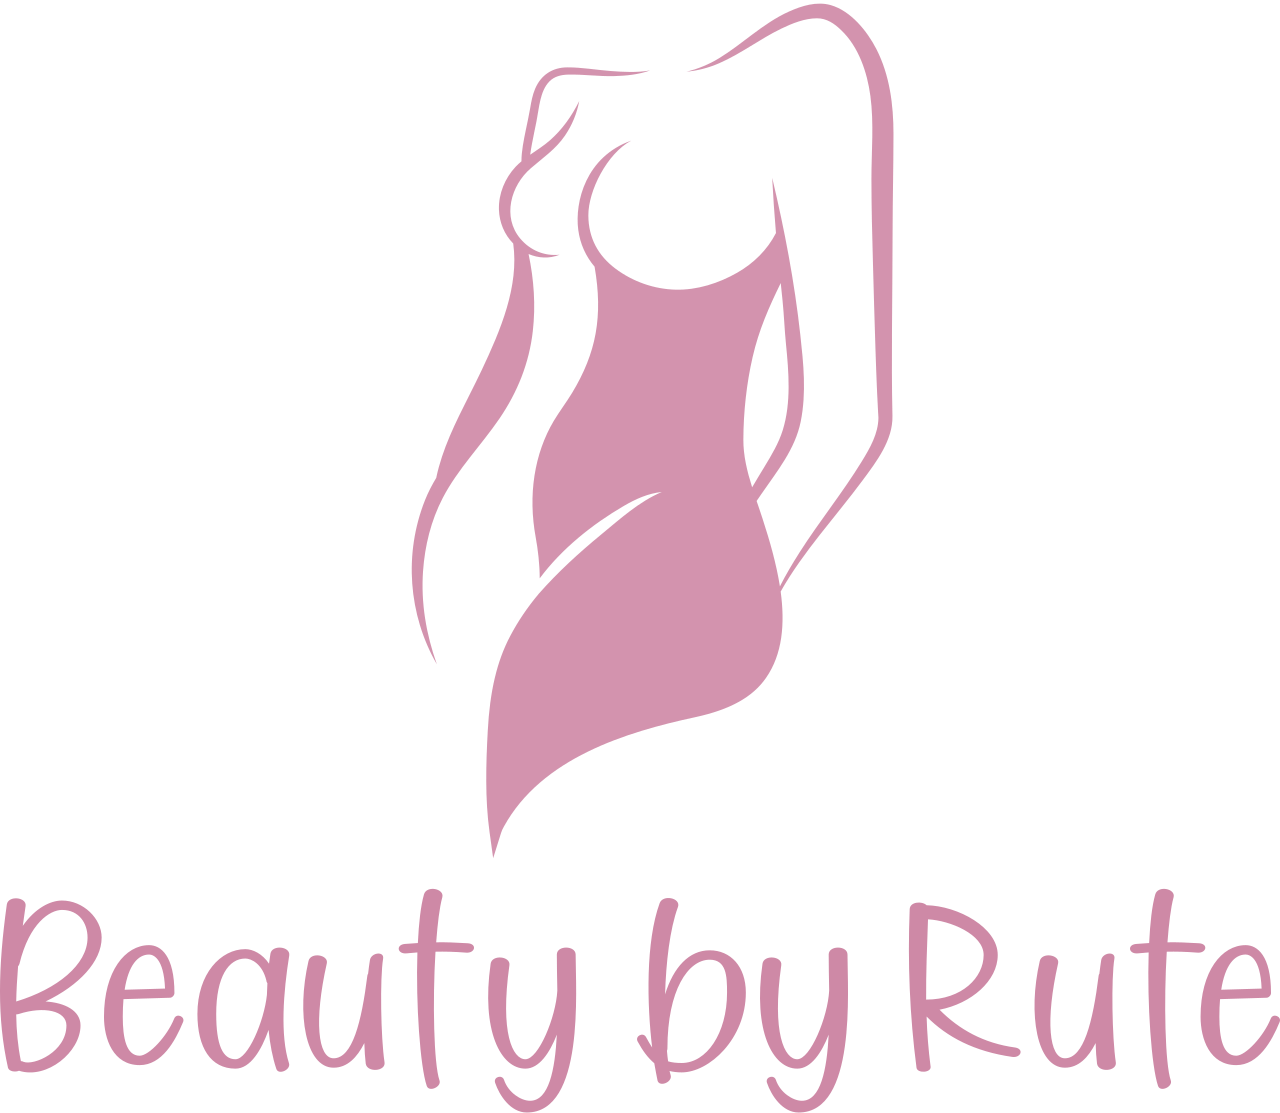 Beauty by Rute's logo